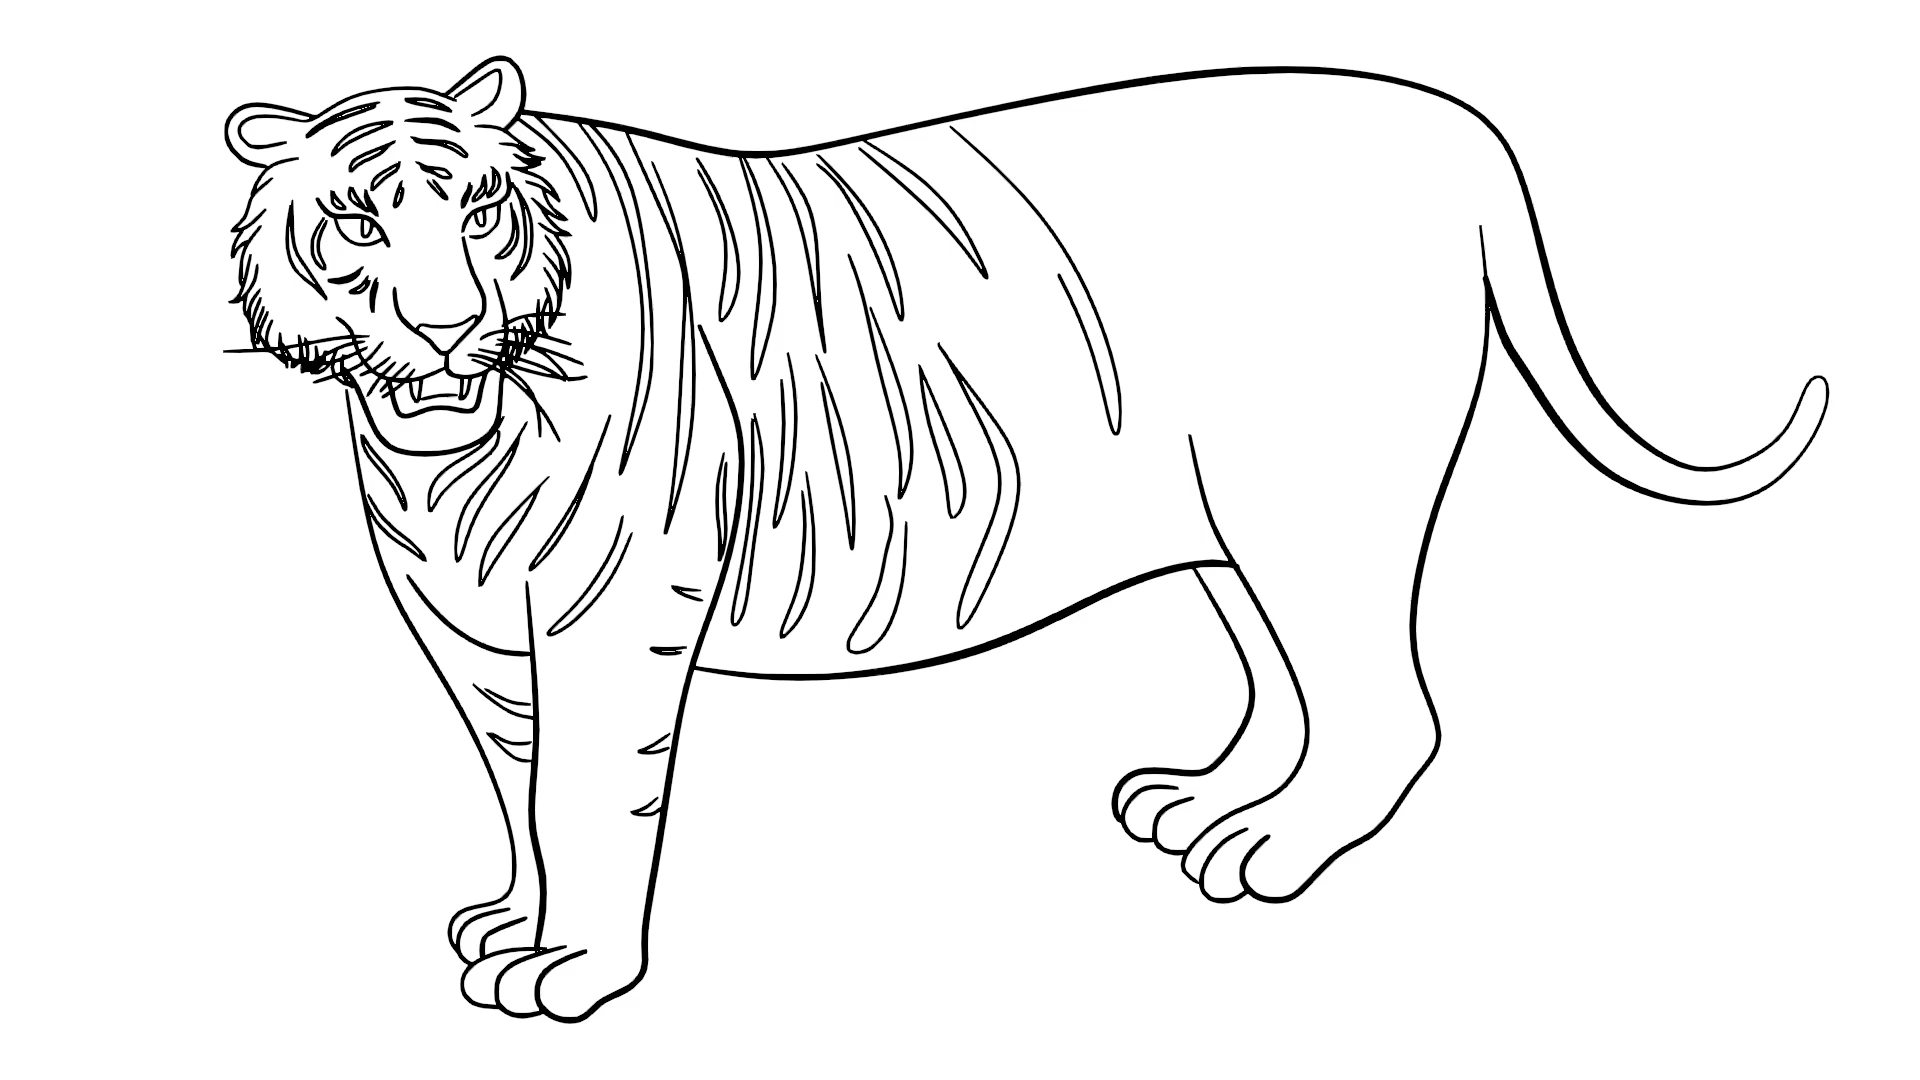 线绘动画:老虎